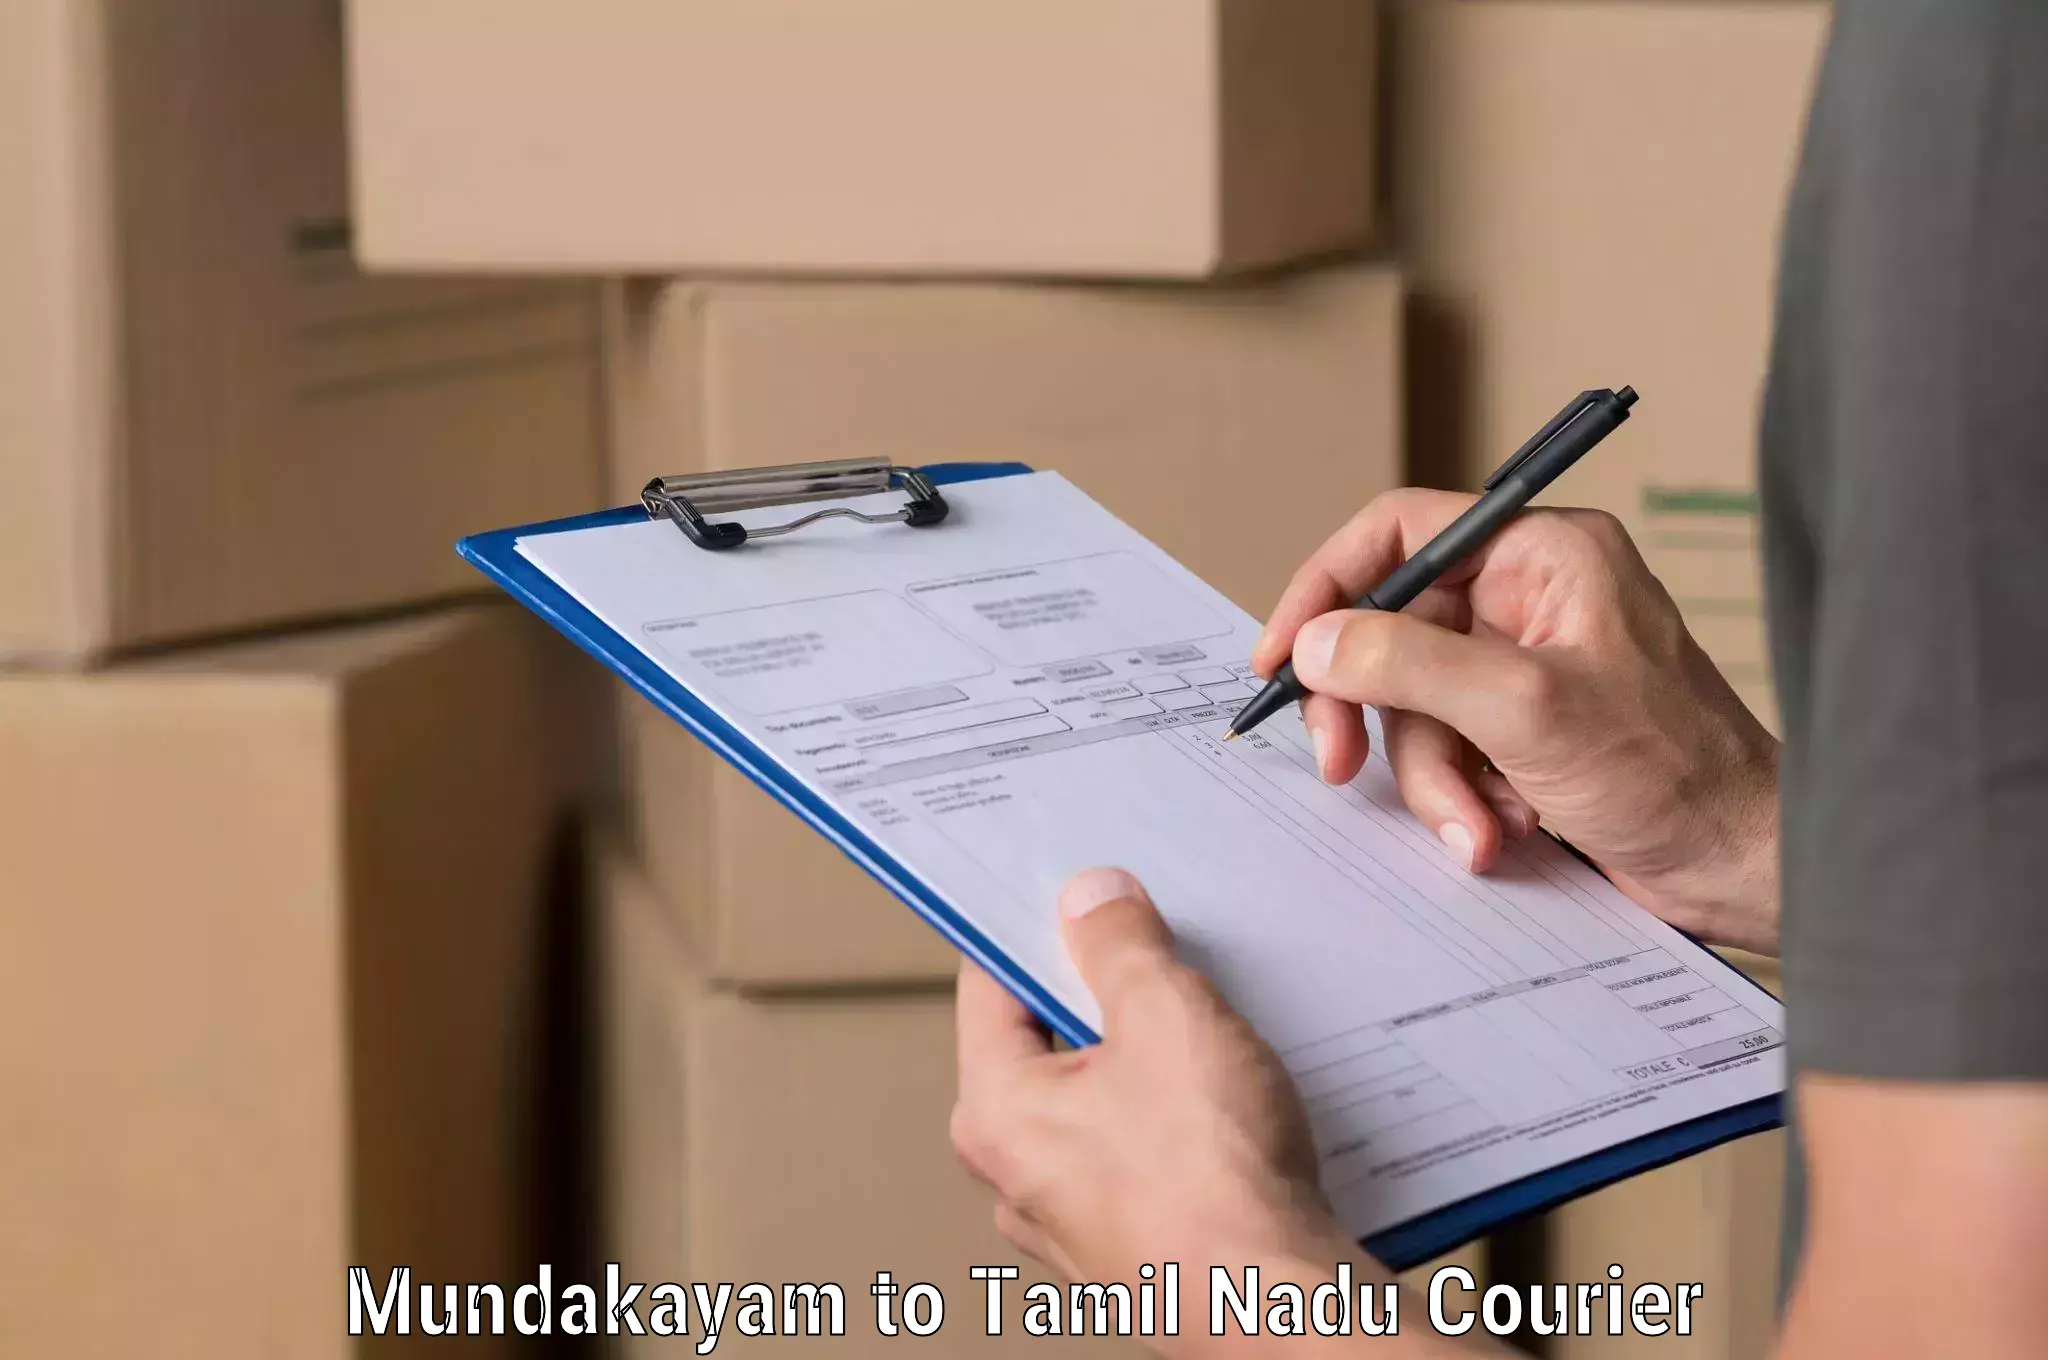 Professional courier handling Mundakayam to Kovilpatti